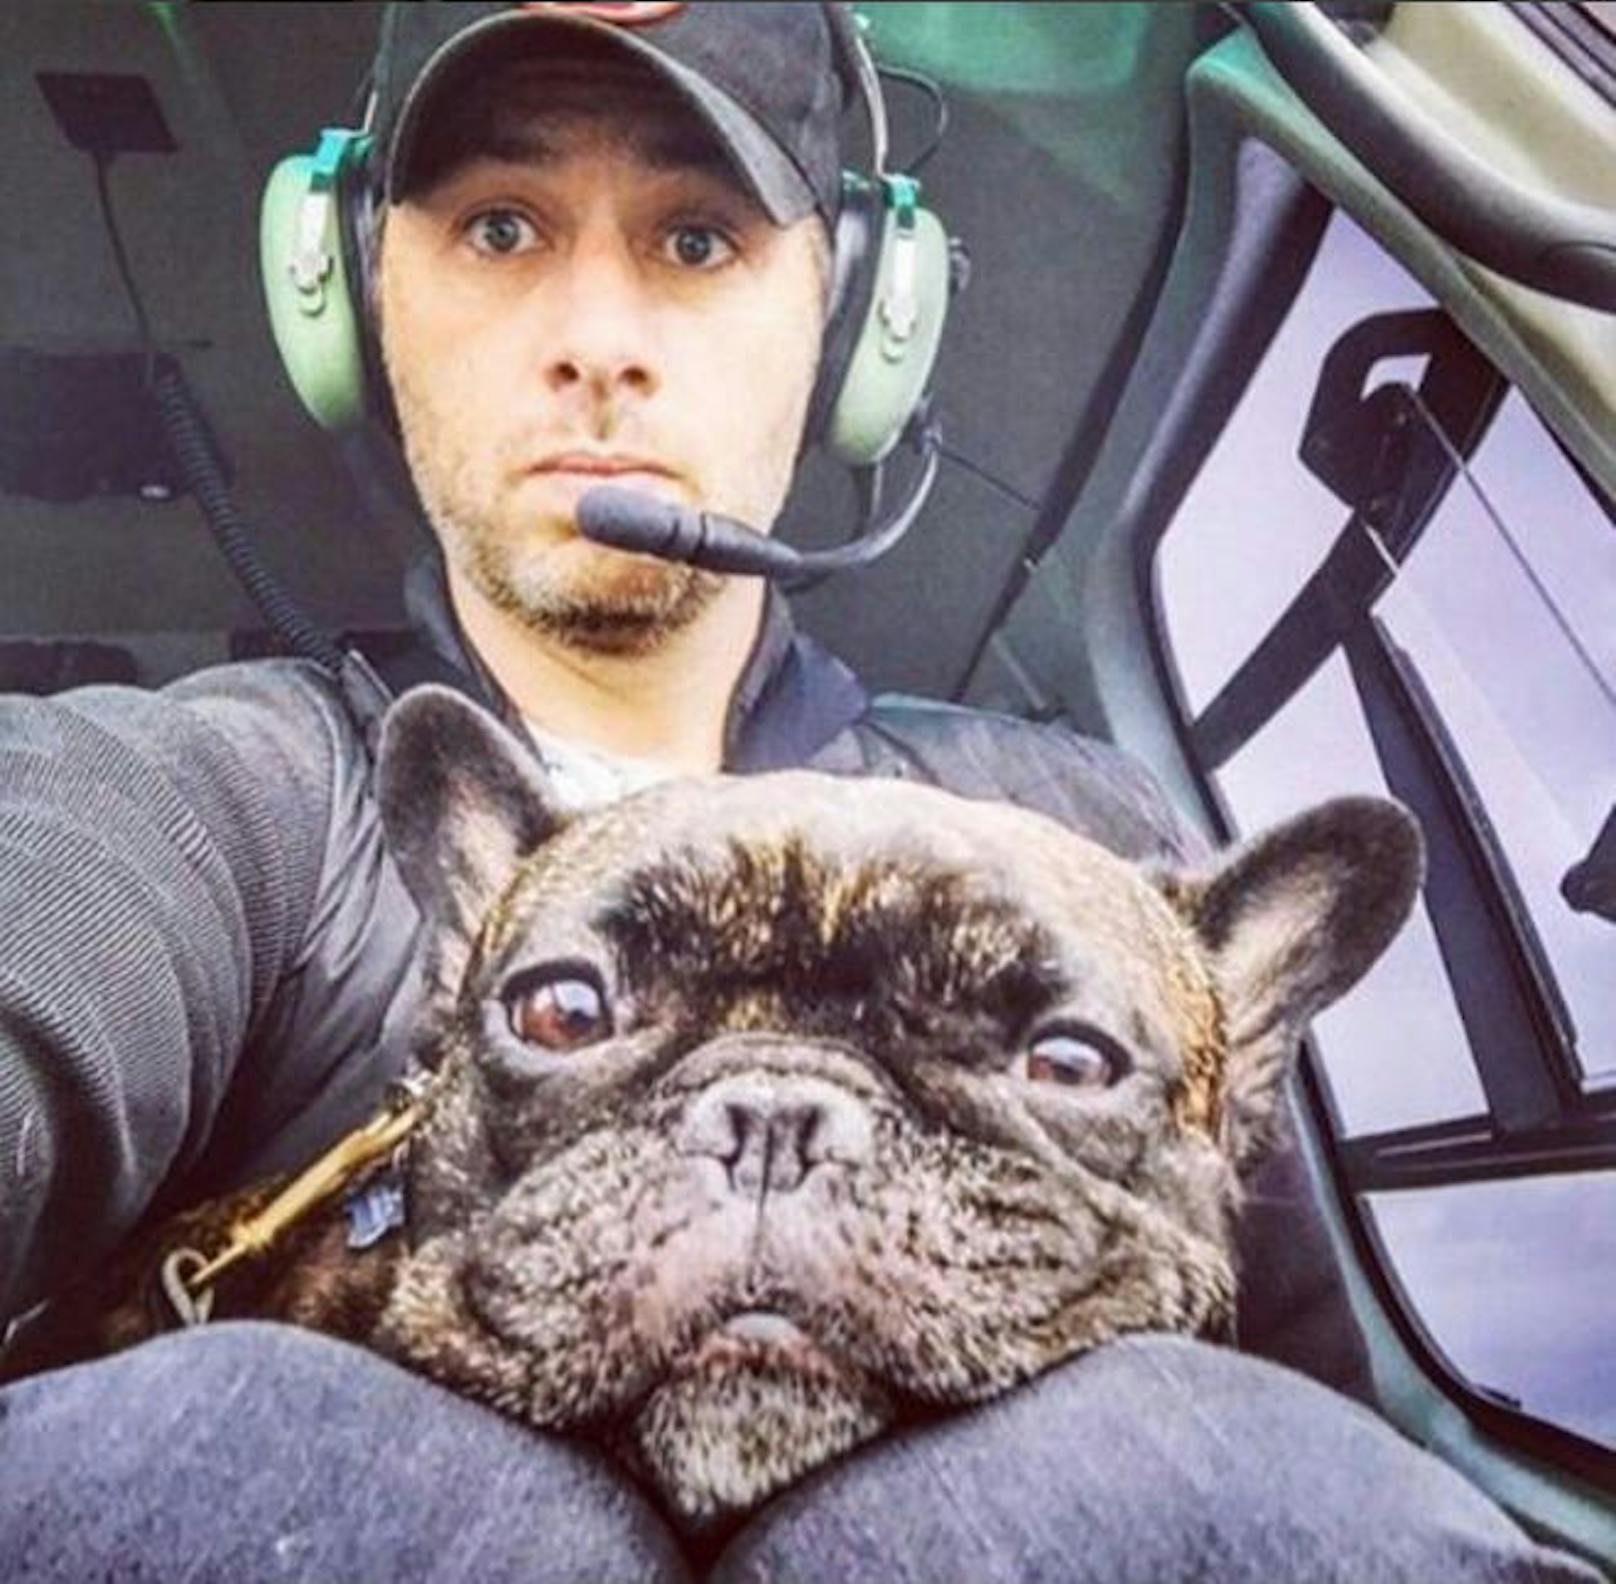 21.05.2017: Schauspieler Zach Braff postete ein Selfie mit seiner französischen Bulldogge aus dem Flugzeug - den Hundeblick haben beide hervorragend drauf!